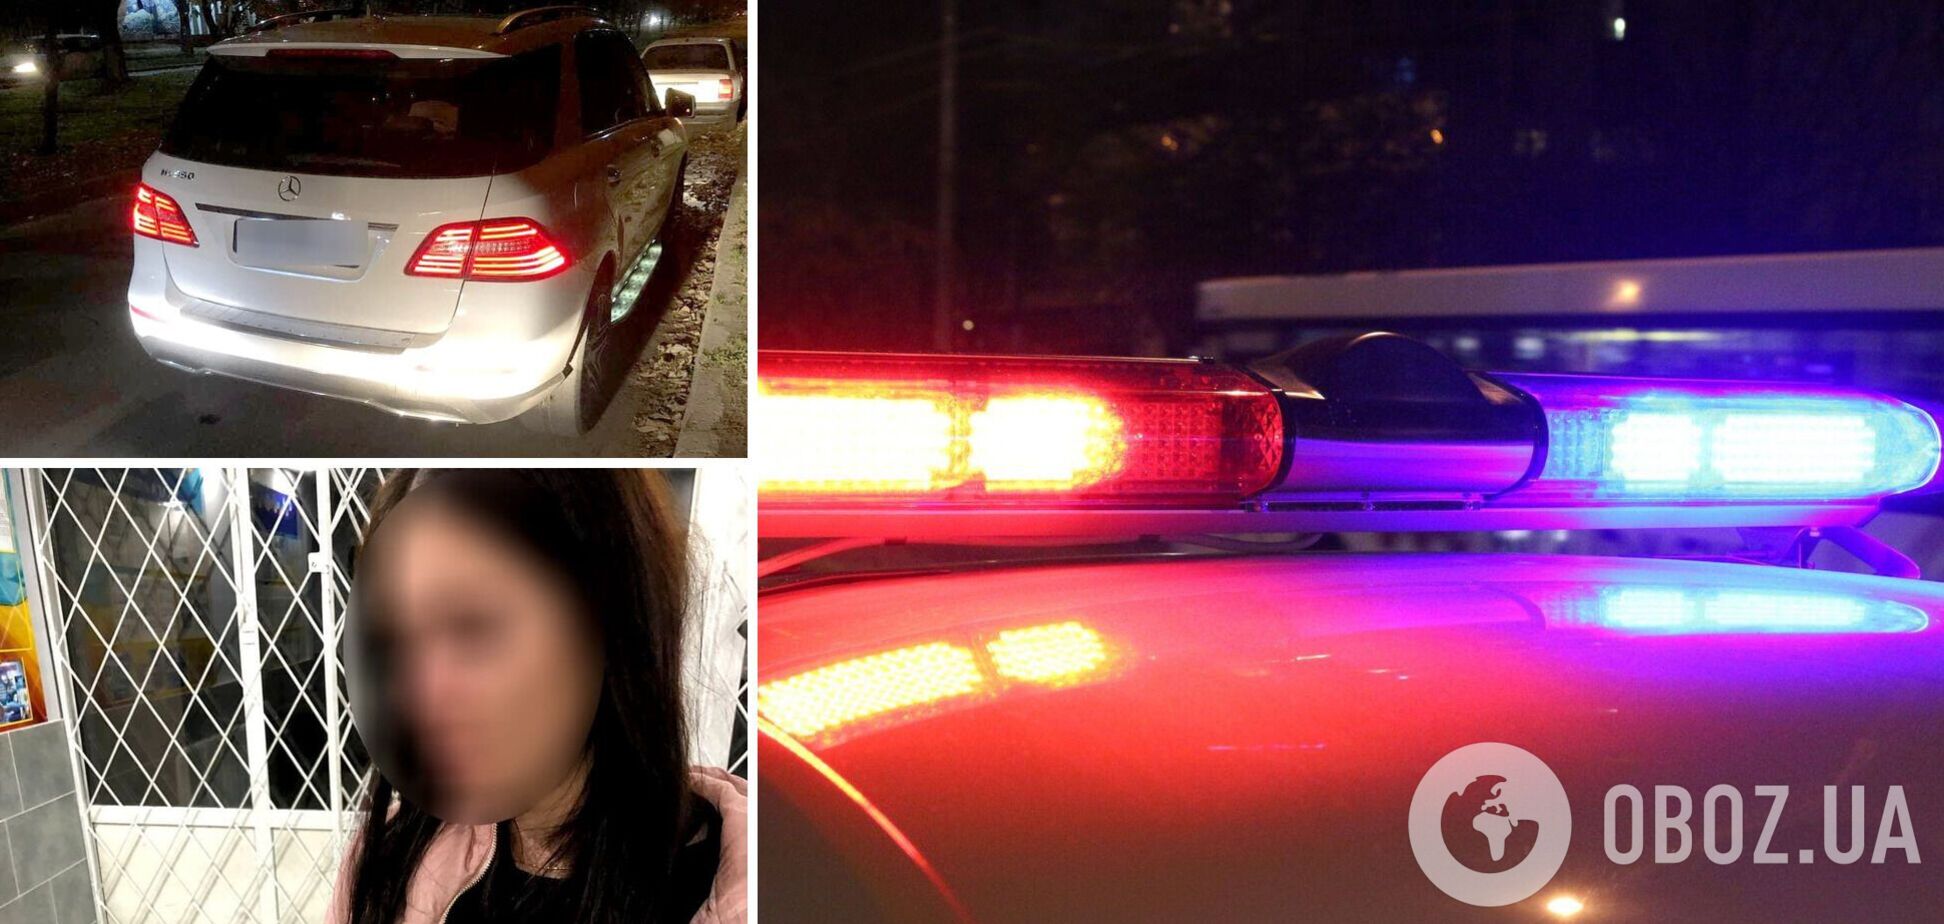 В 25 раз больше нормы: в Херсоне задержали пьяную девушку за рулем Mercedes. Фото